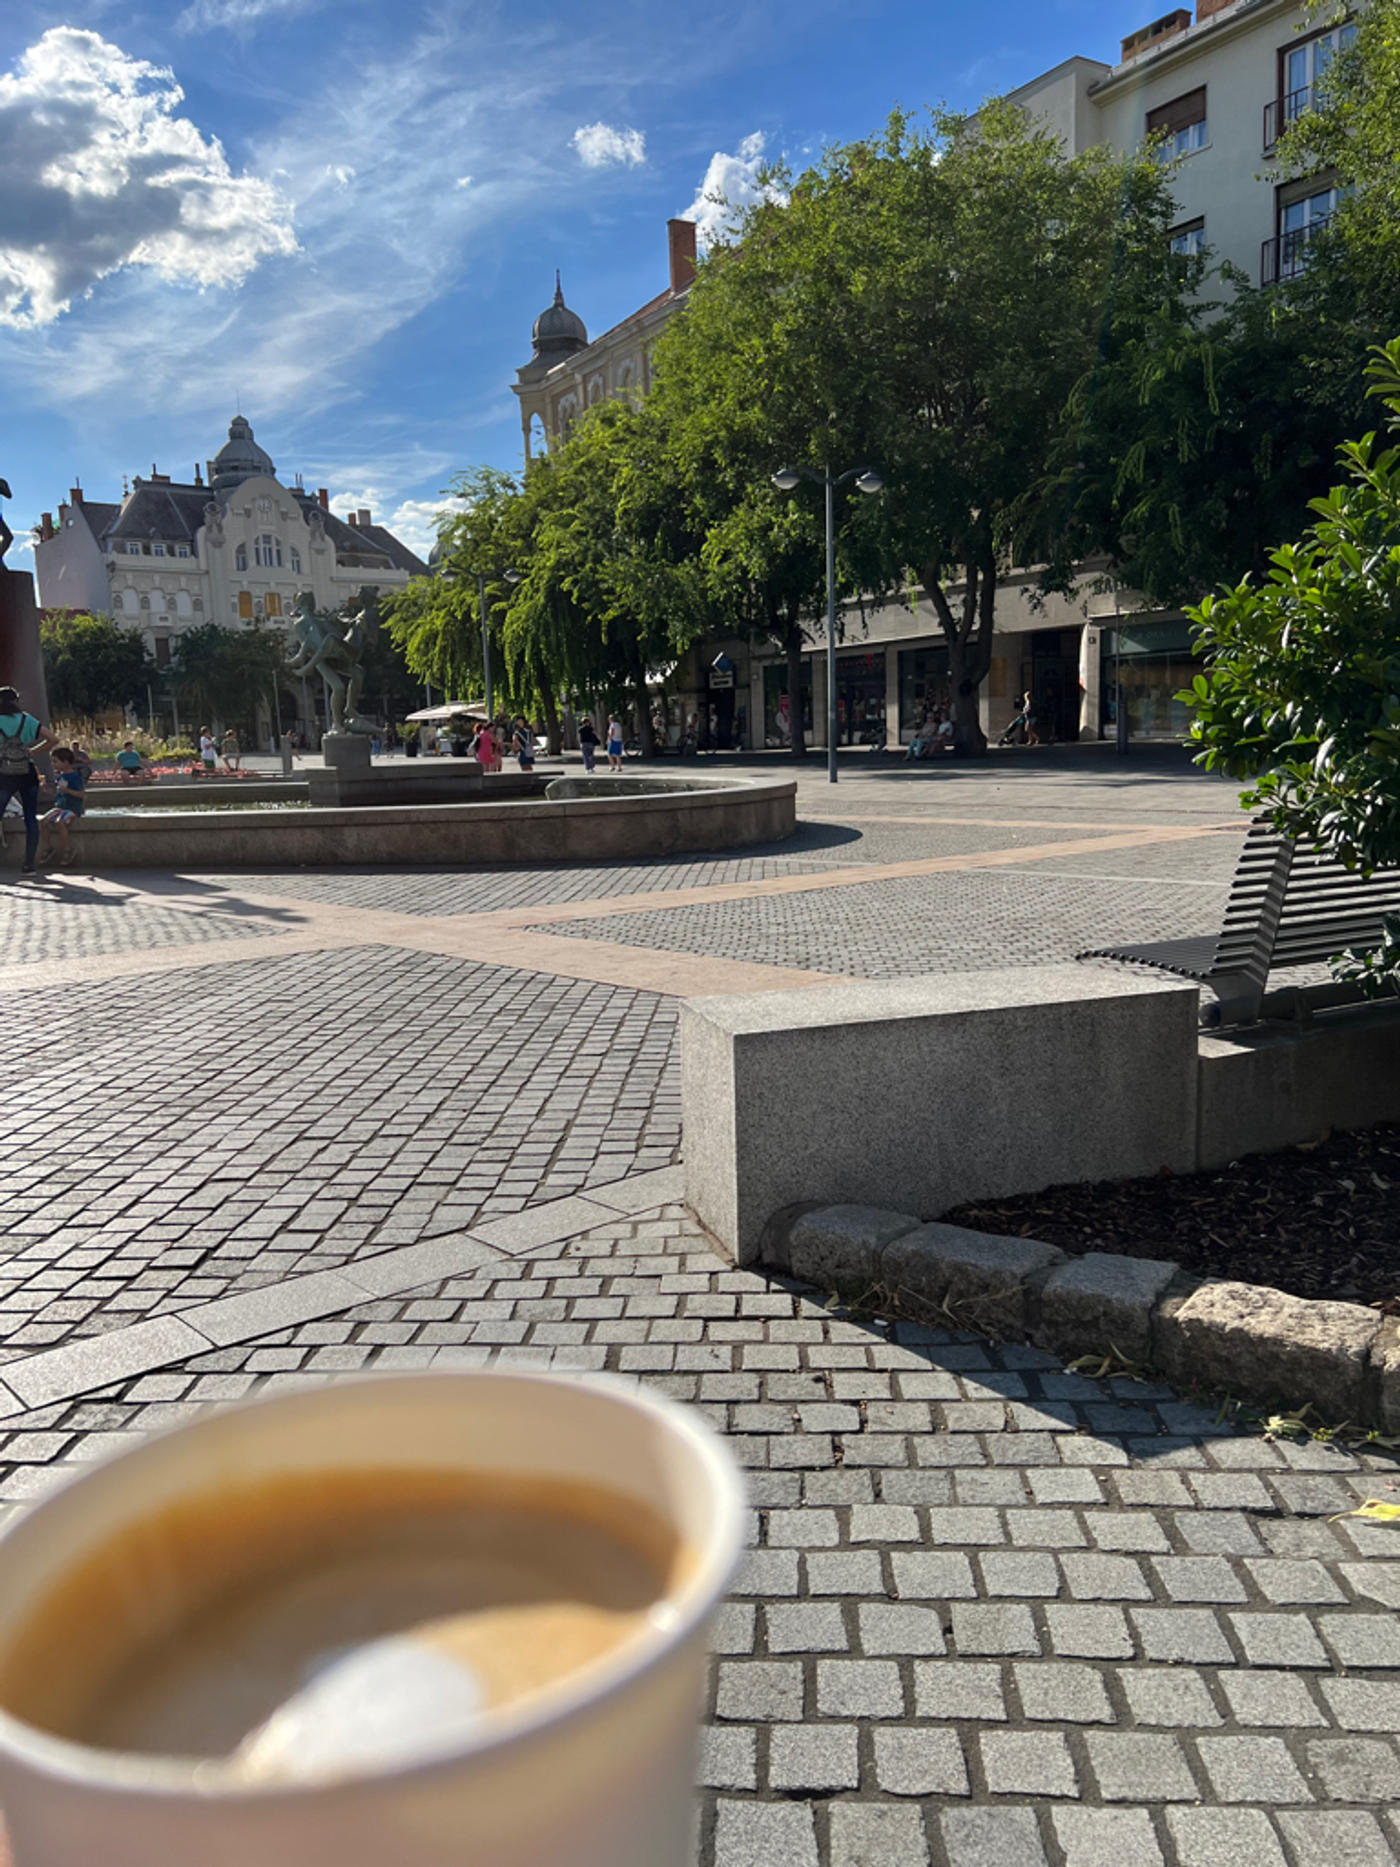 Kaffe Trinken und den schönen Stadtkern genießen 😎